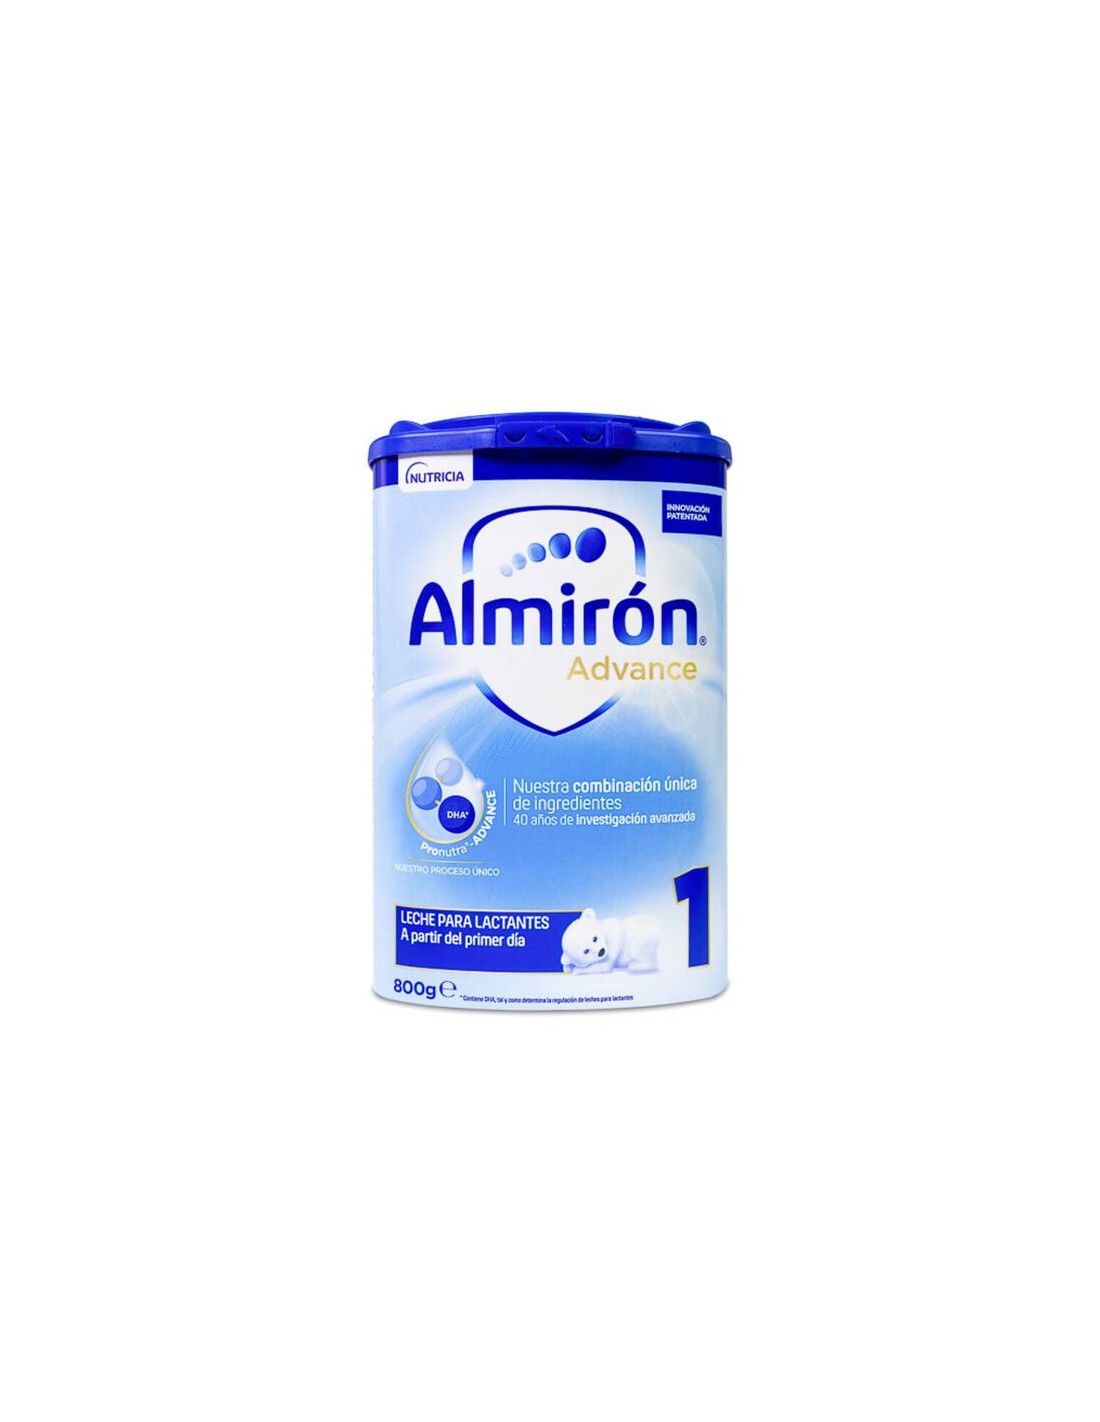 Almirón Advance - nutricia - 800 g